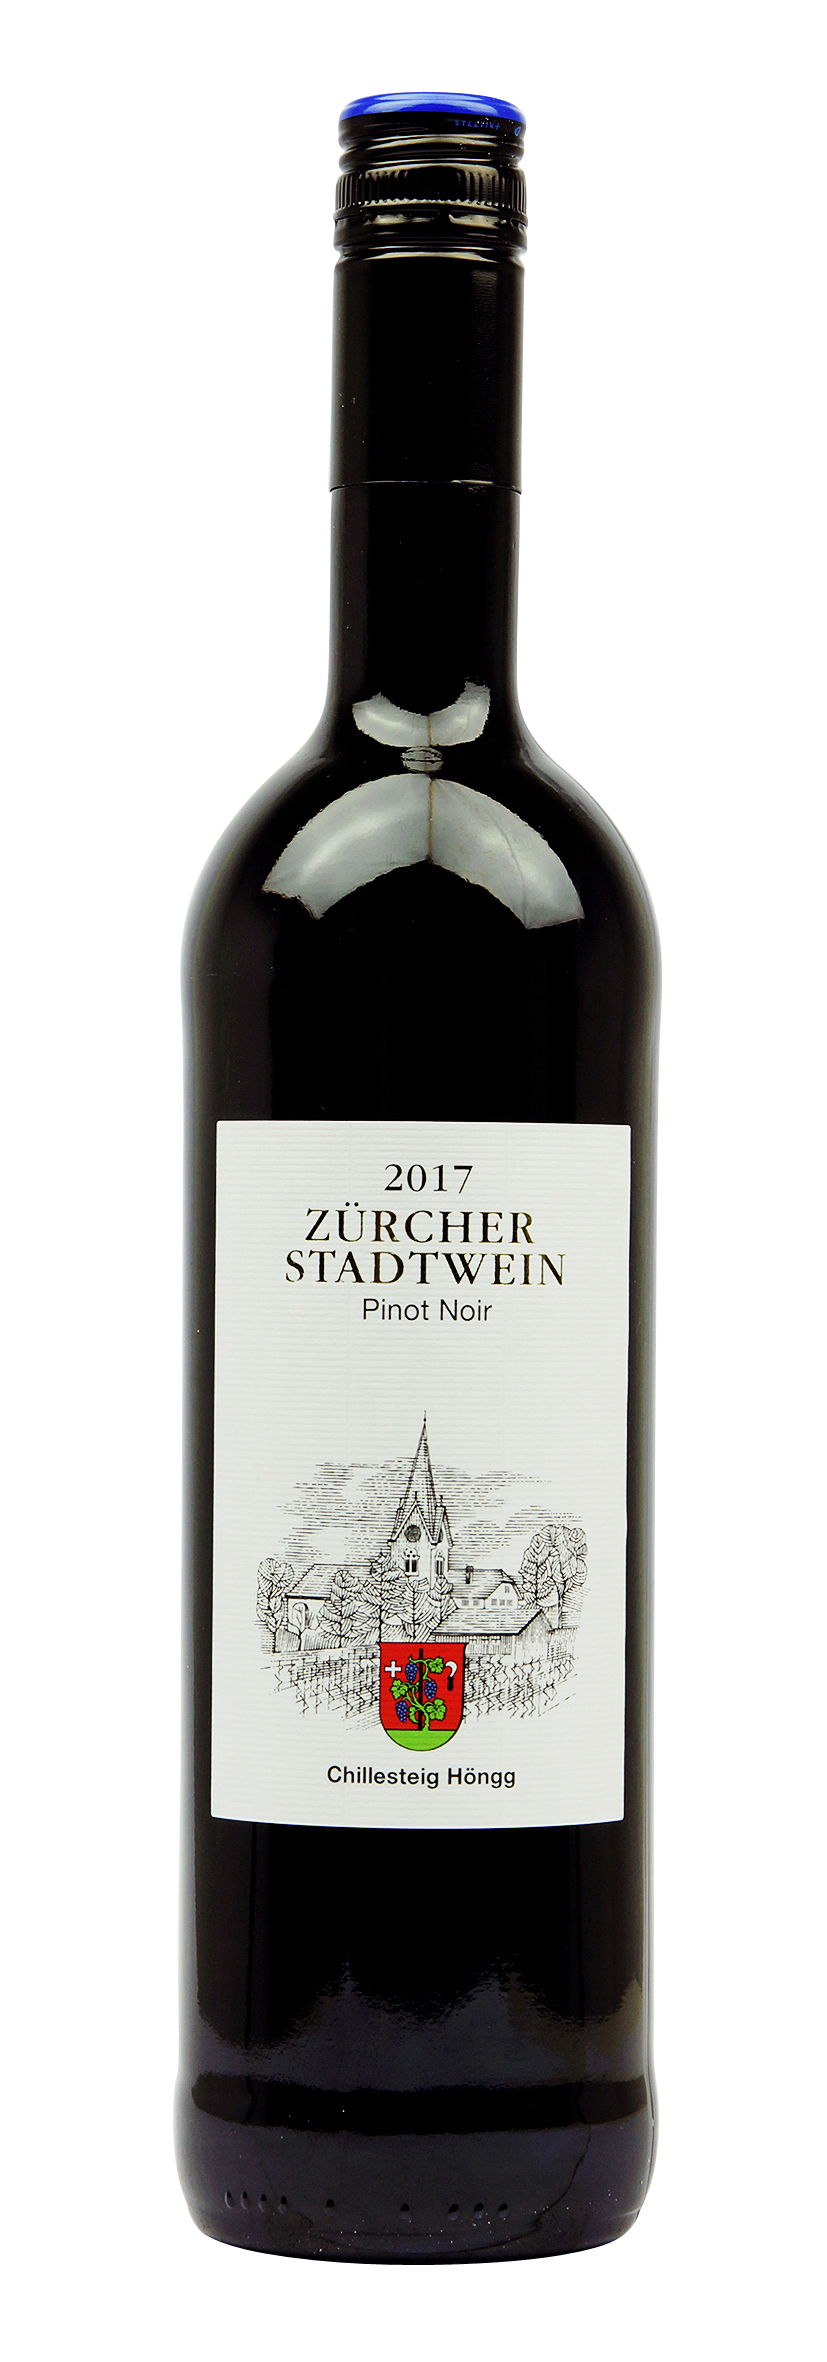 Zürich AOC Zürcher Stadtwein Chillesteig Höngg Pinot Noir 2017